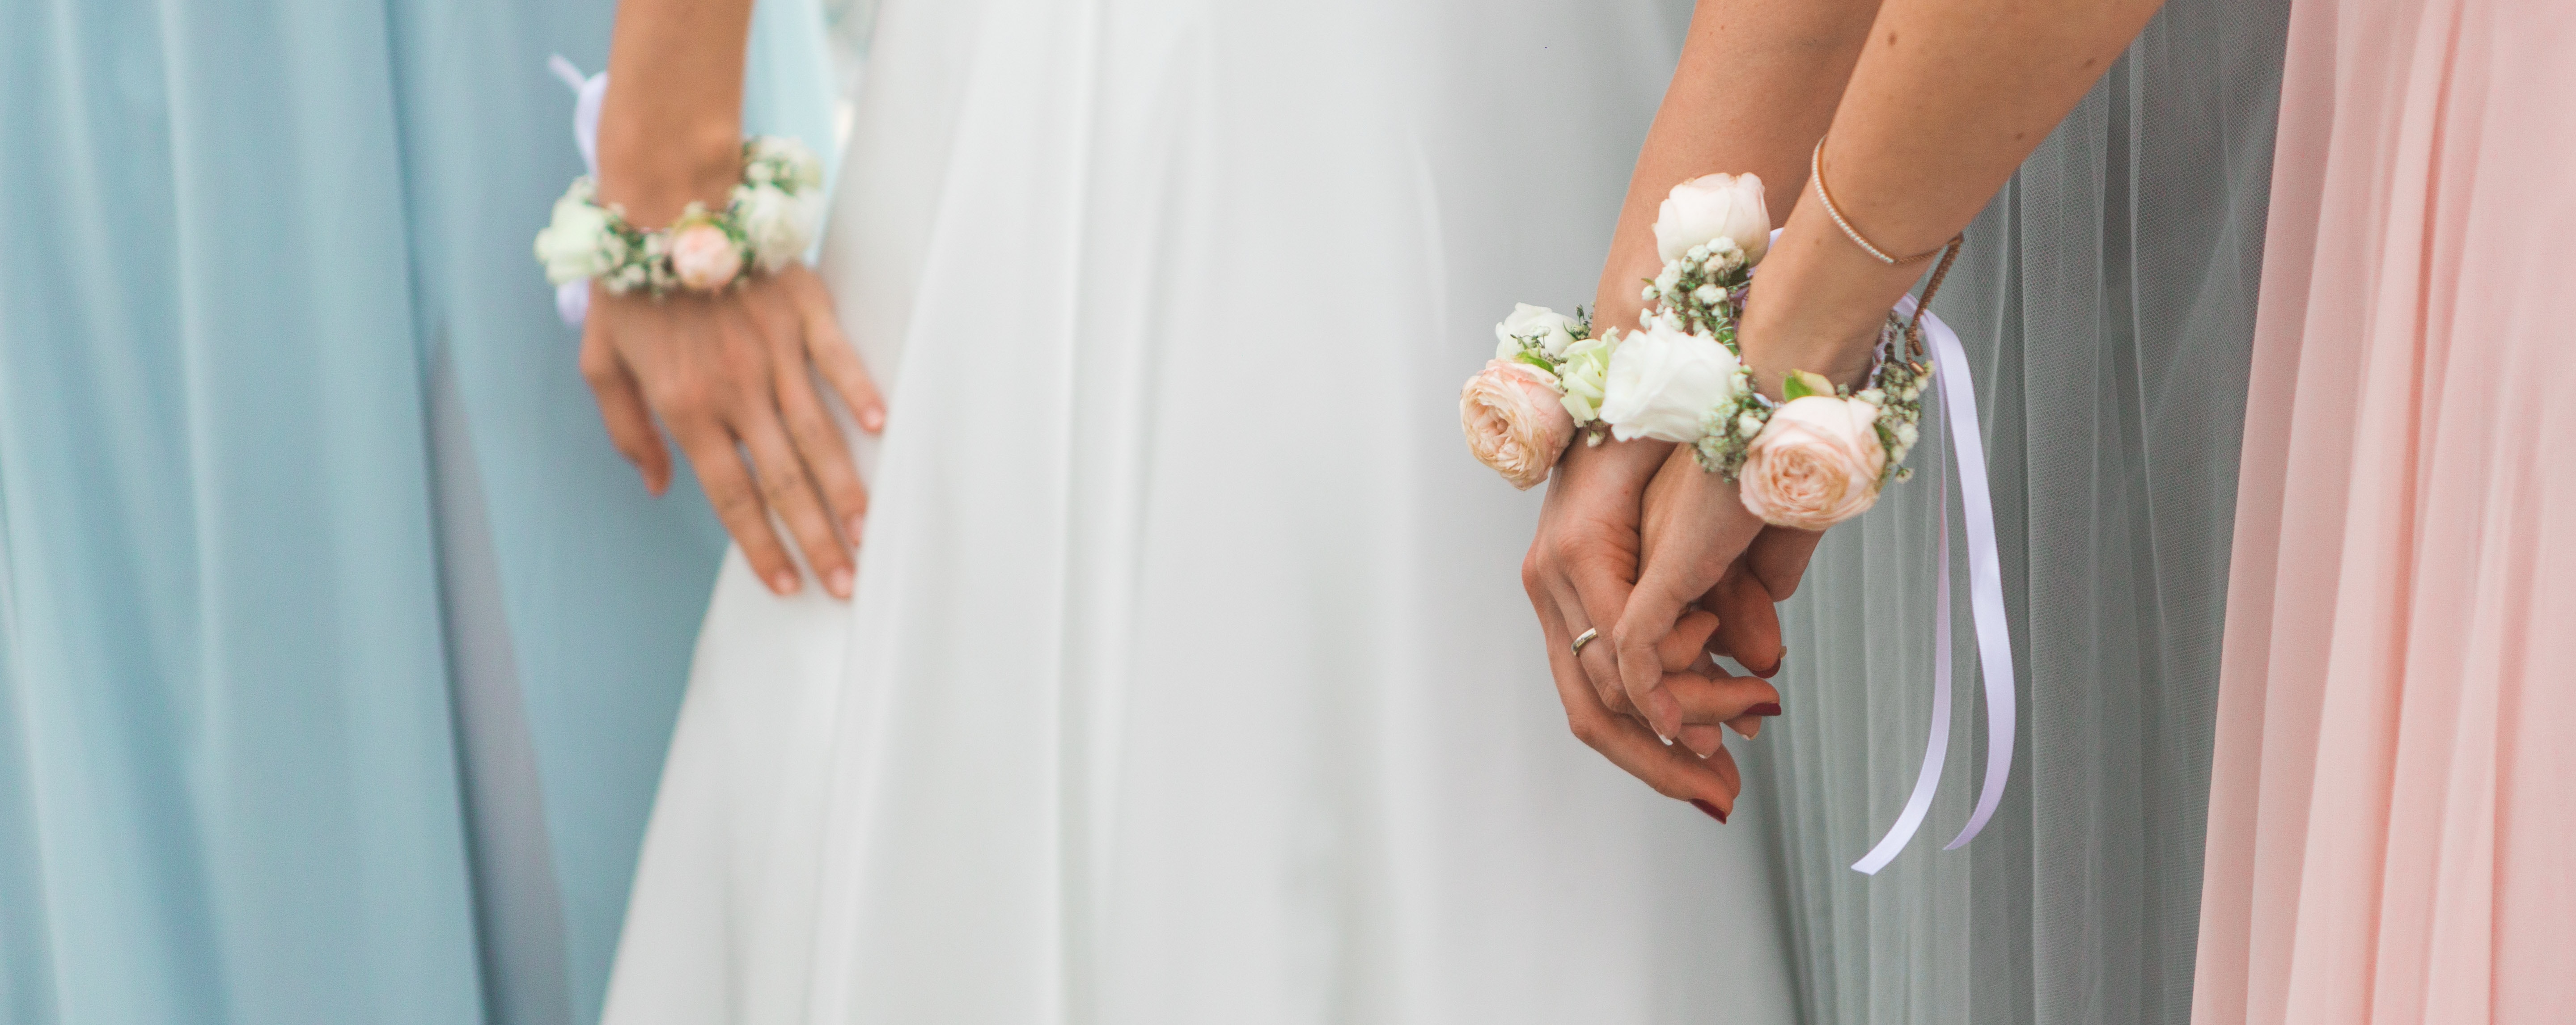 Brautjungfern halten Blumensträuße in ihren Händen.